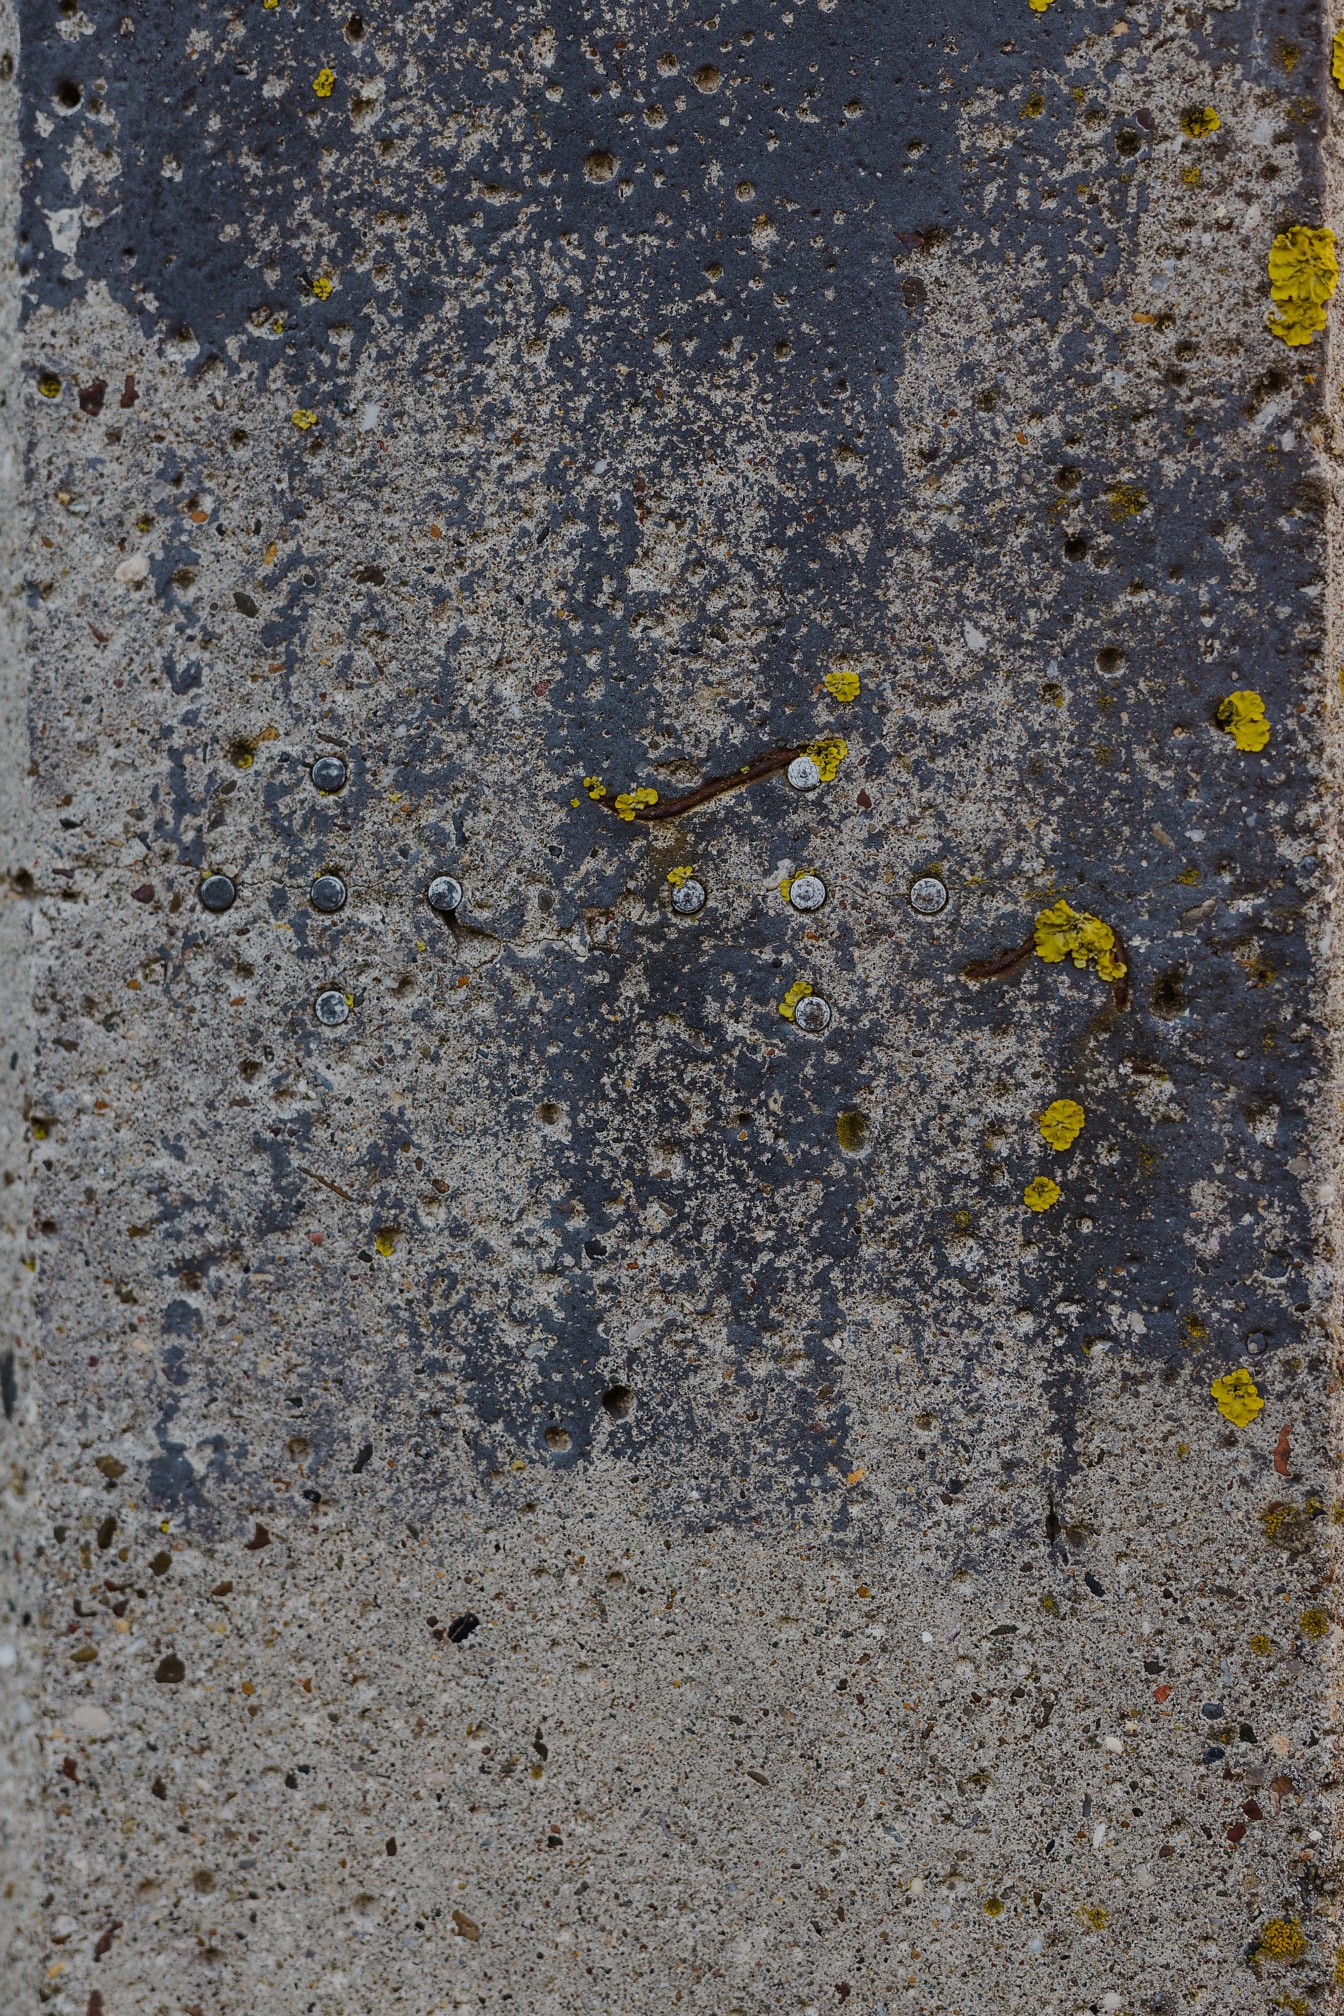 Nærbillede af forfalden betonoverflade med metaltråde